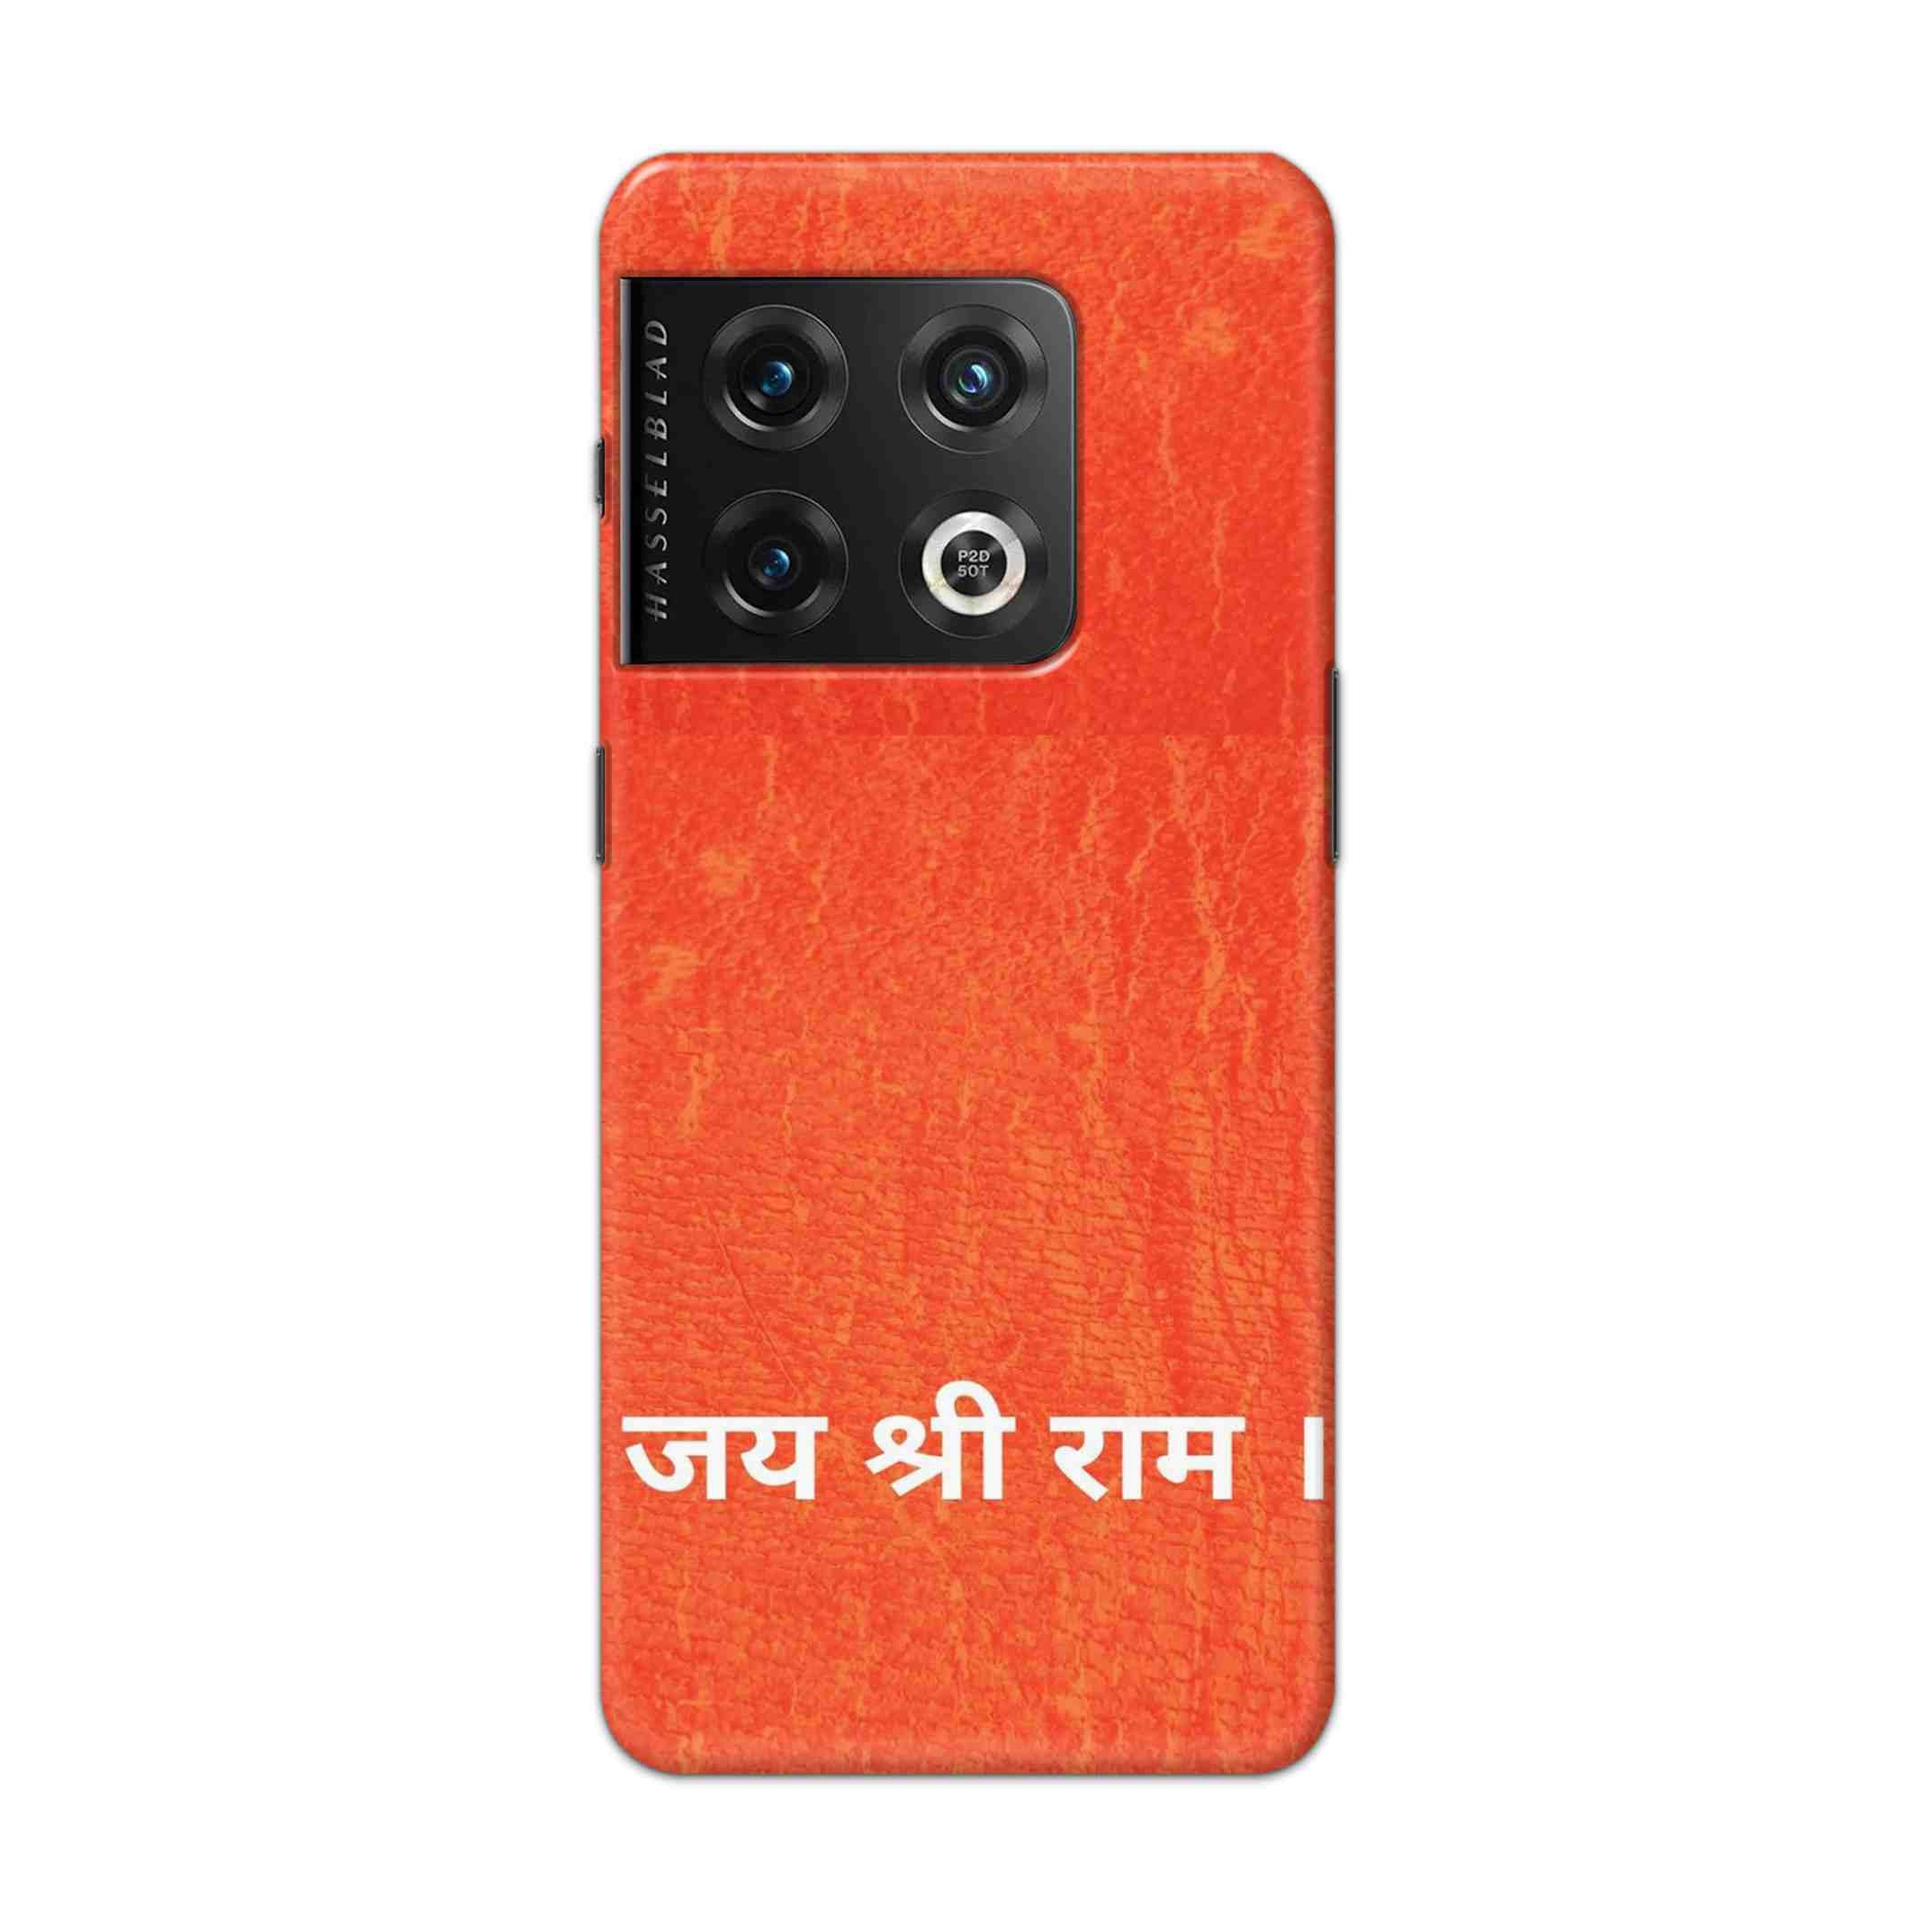 Buy Jai Shree Ram Hard Back Mobile Phone Case Cover For Oneplus 10 Pro Online